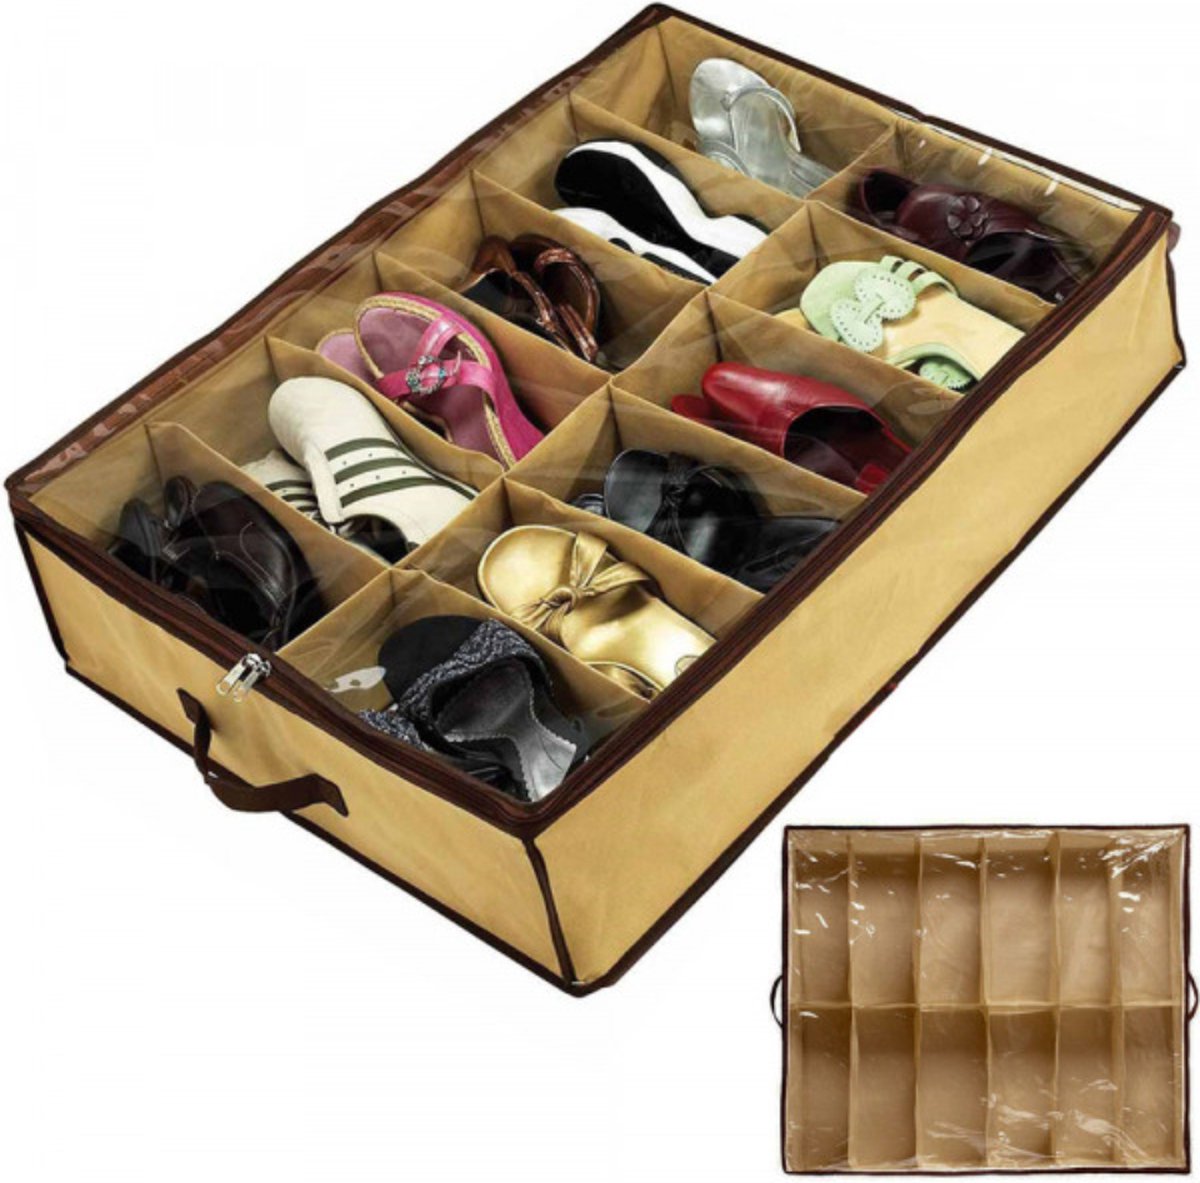 schoenen opberger-12 vakken-overzichtelijk en geordend-ook bruikbaar voor diverse kledingstukken